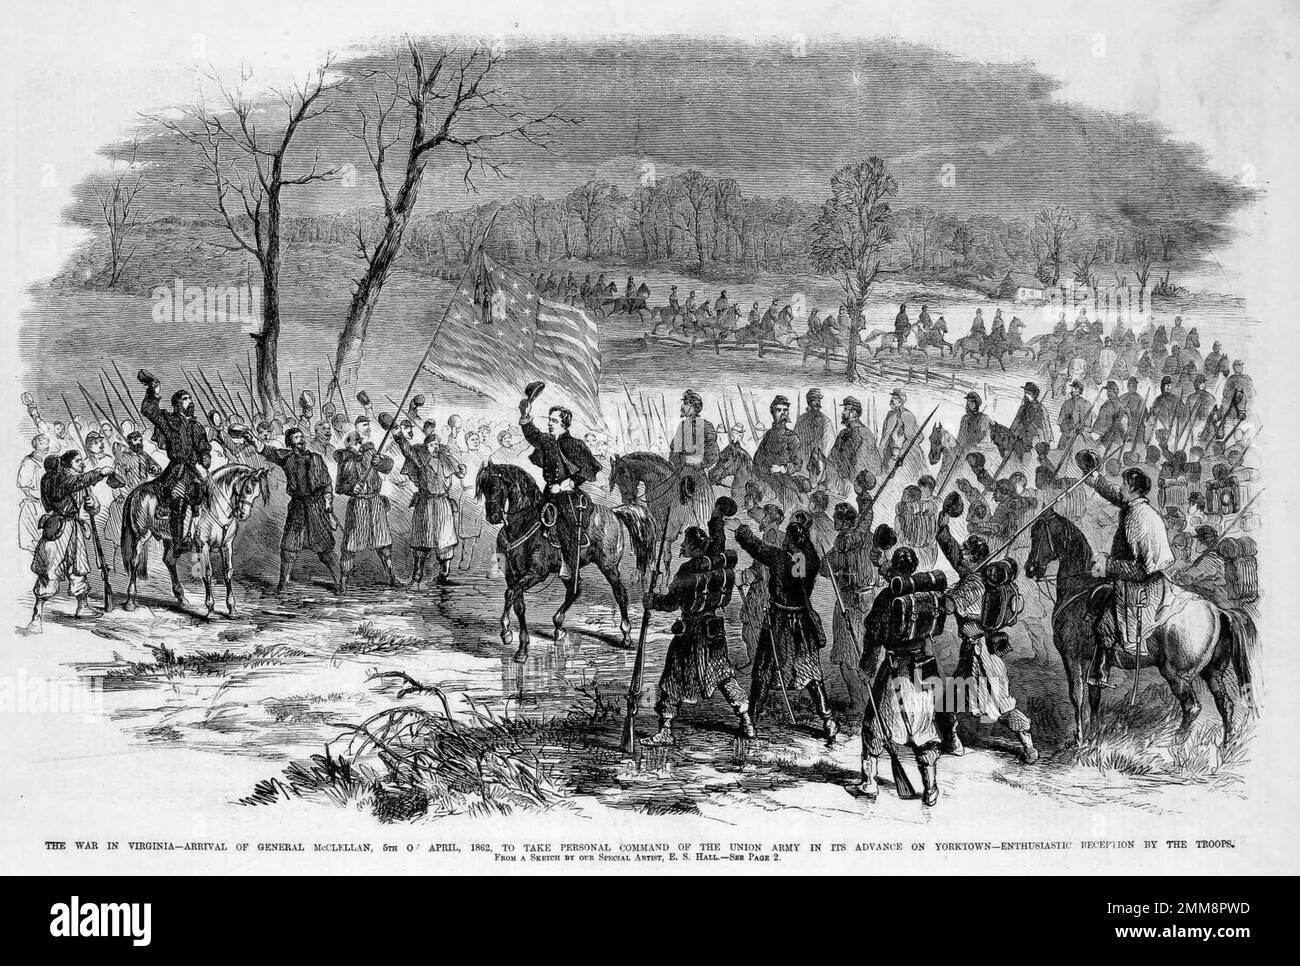 Arrivo del generale McClellan, 5th aprile 1862, per assumere il comando personale dell'esercito dell'Unione in suo anticipo su Yorktown. L'assedio di Yorktown fu combattuto dal 5 aprile al 4 maggio 1862. La battaglia fu inconcludente, mentre le forze del Conferderato si tirarono fuori dalle loro posizioni di notte, scappando intatte a Williamsberg. Foto Stock